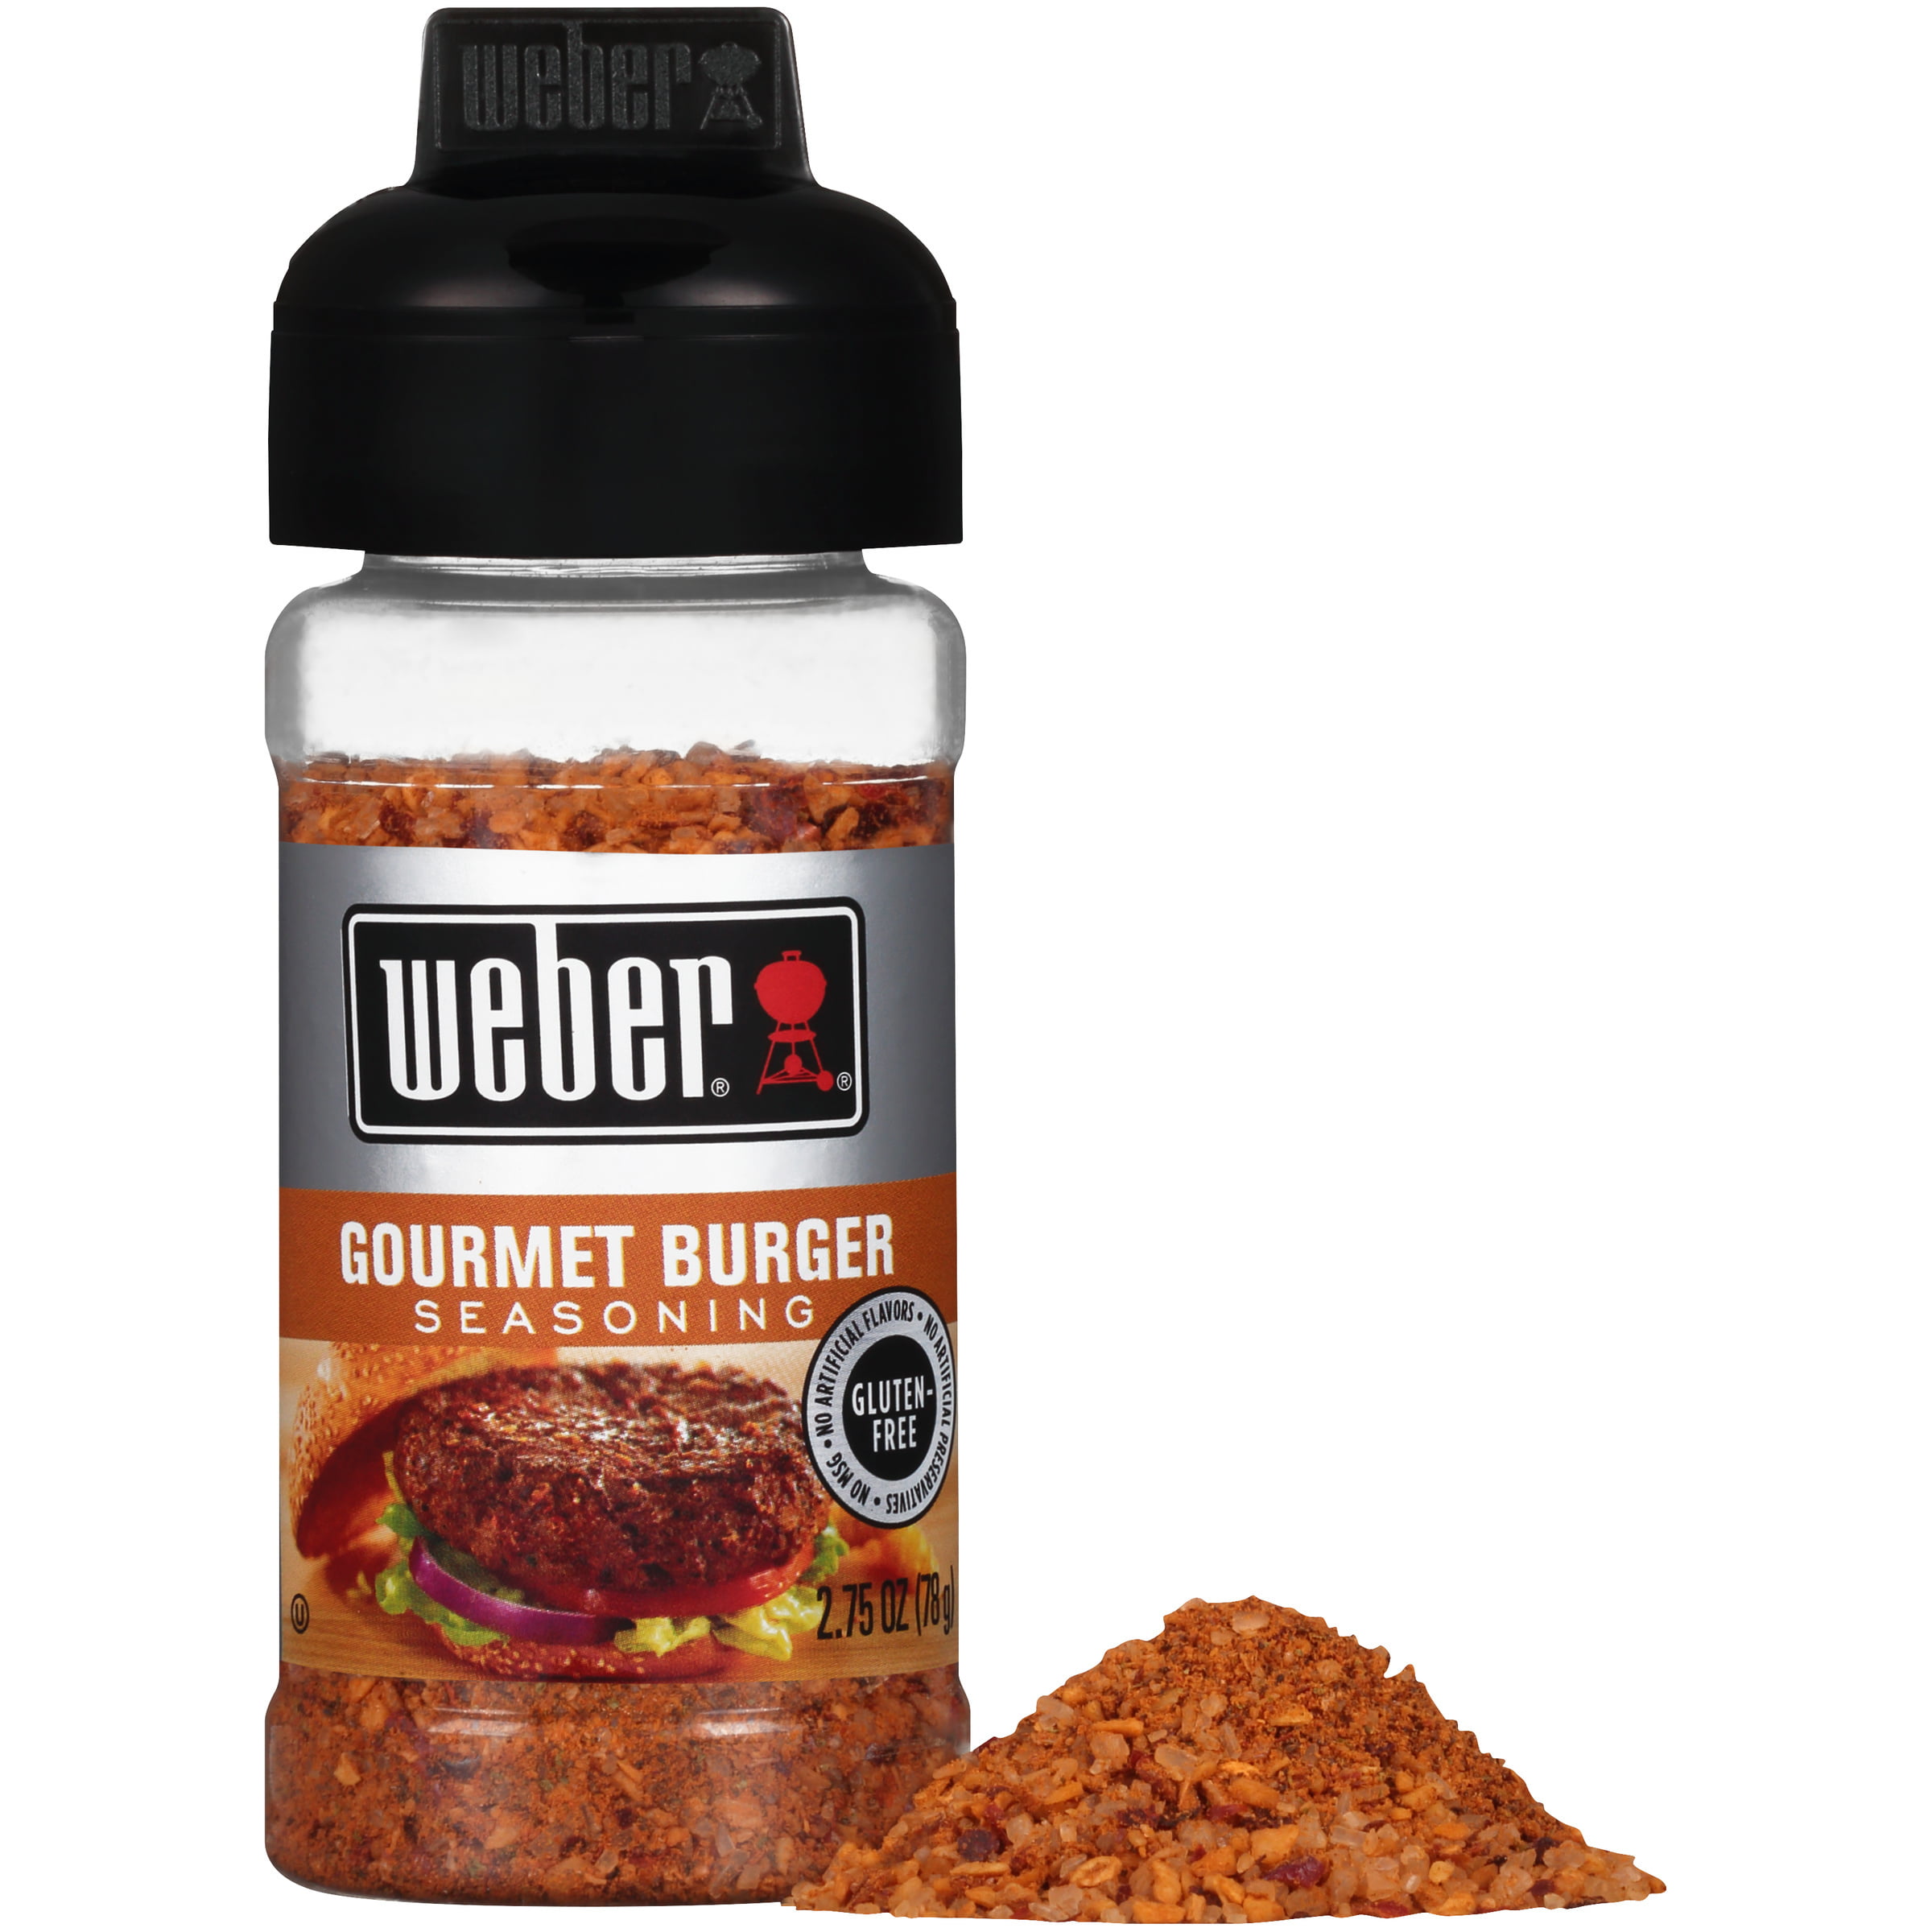 Buy Weber Jalapeno Popper Seasoning (9.75 oz) Bundle with 1 TSP